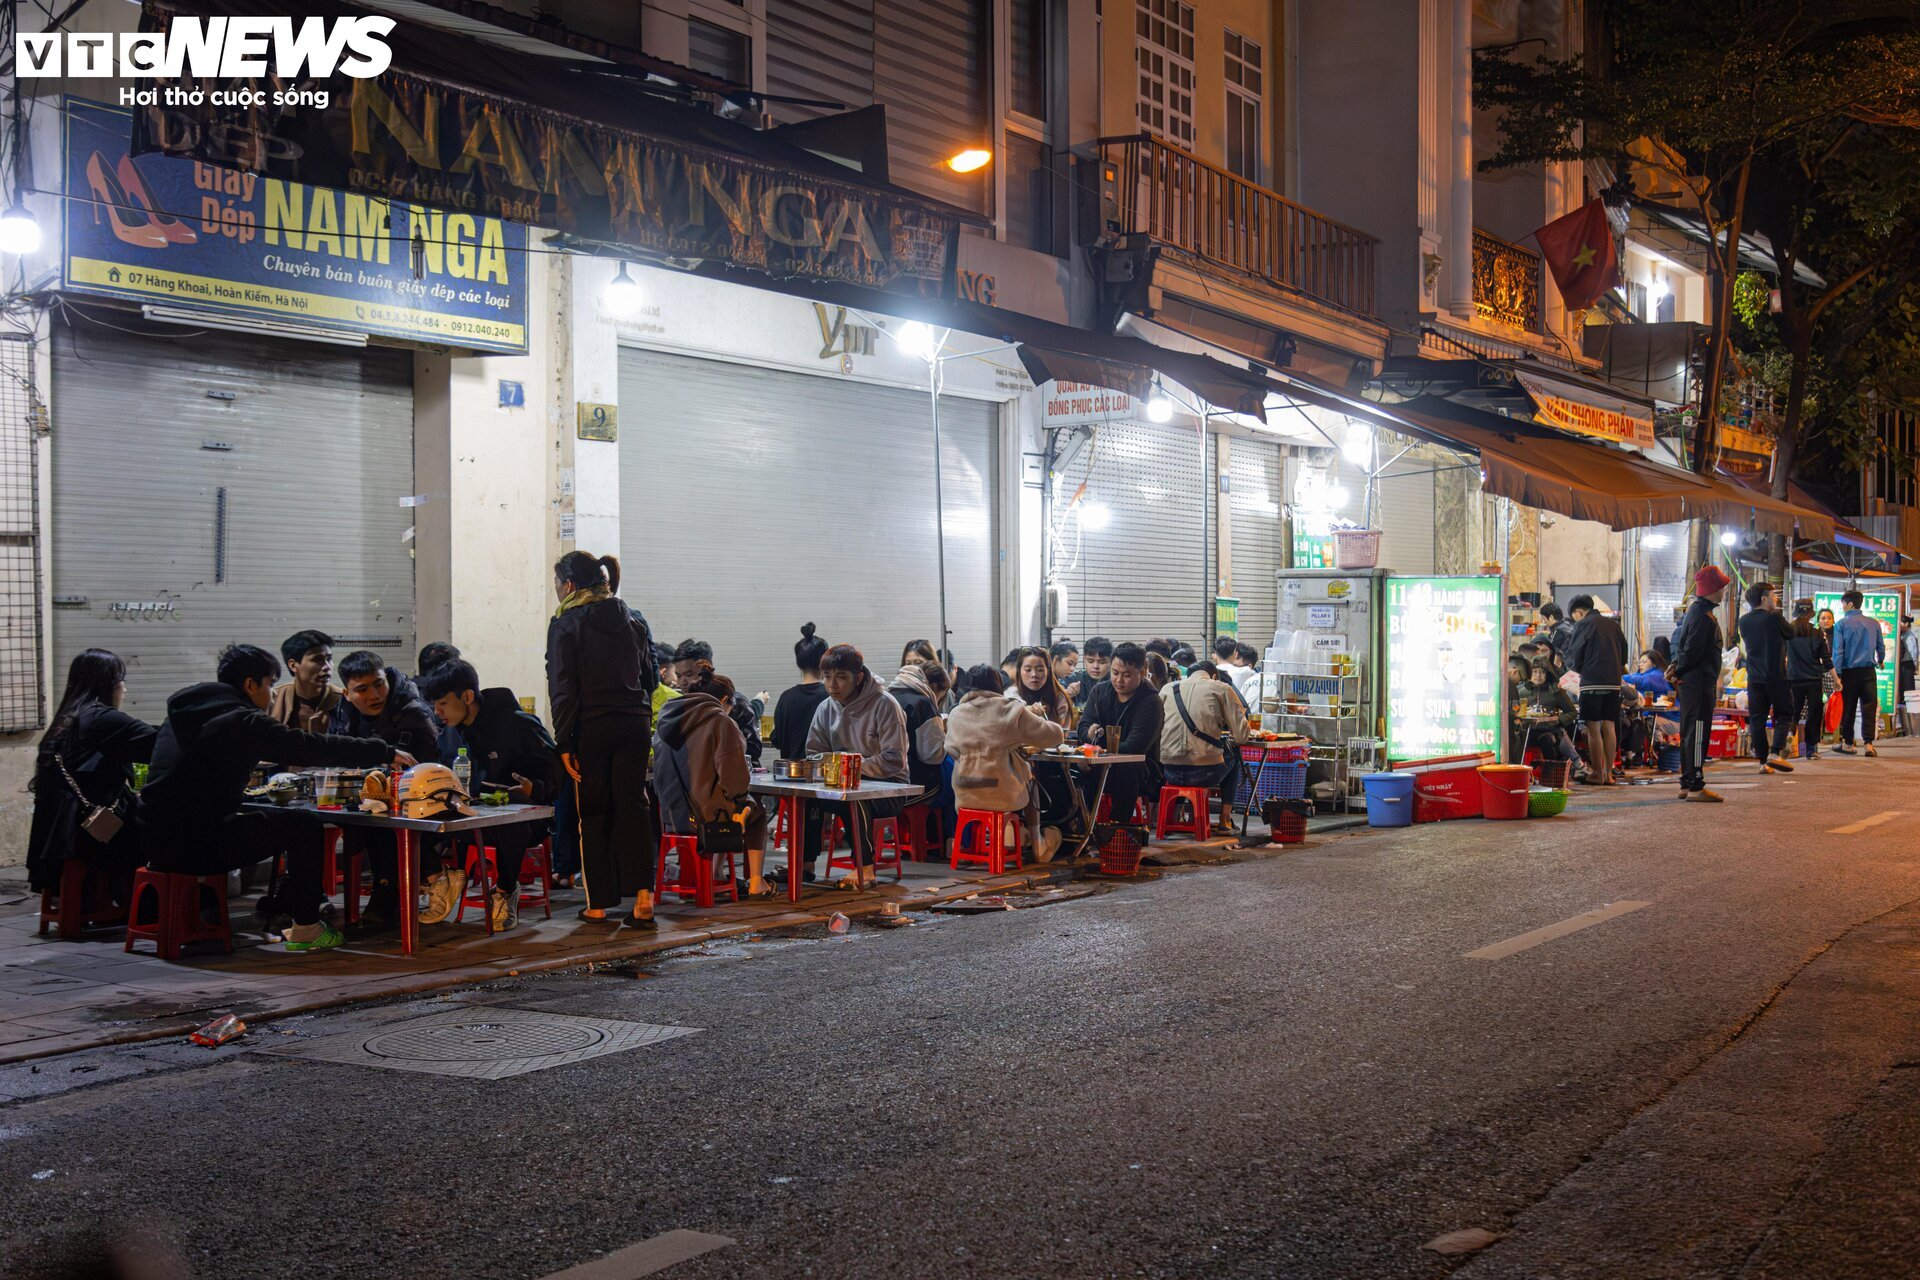 Hà Nội chuyển rét, quán ăn vỉa hè đông nghẹt khách từ sáng sớm đến đêm khuya - Ảnh 12.